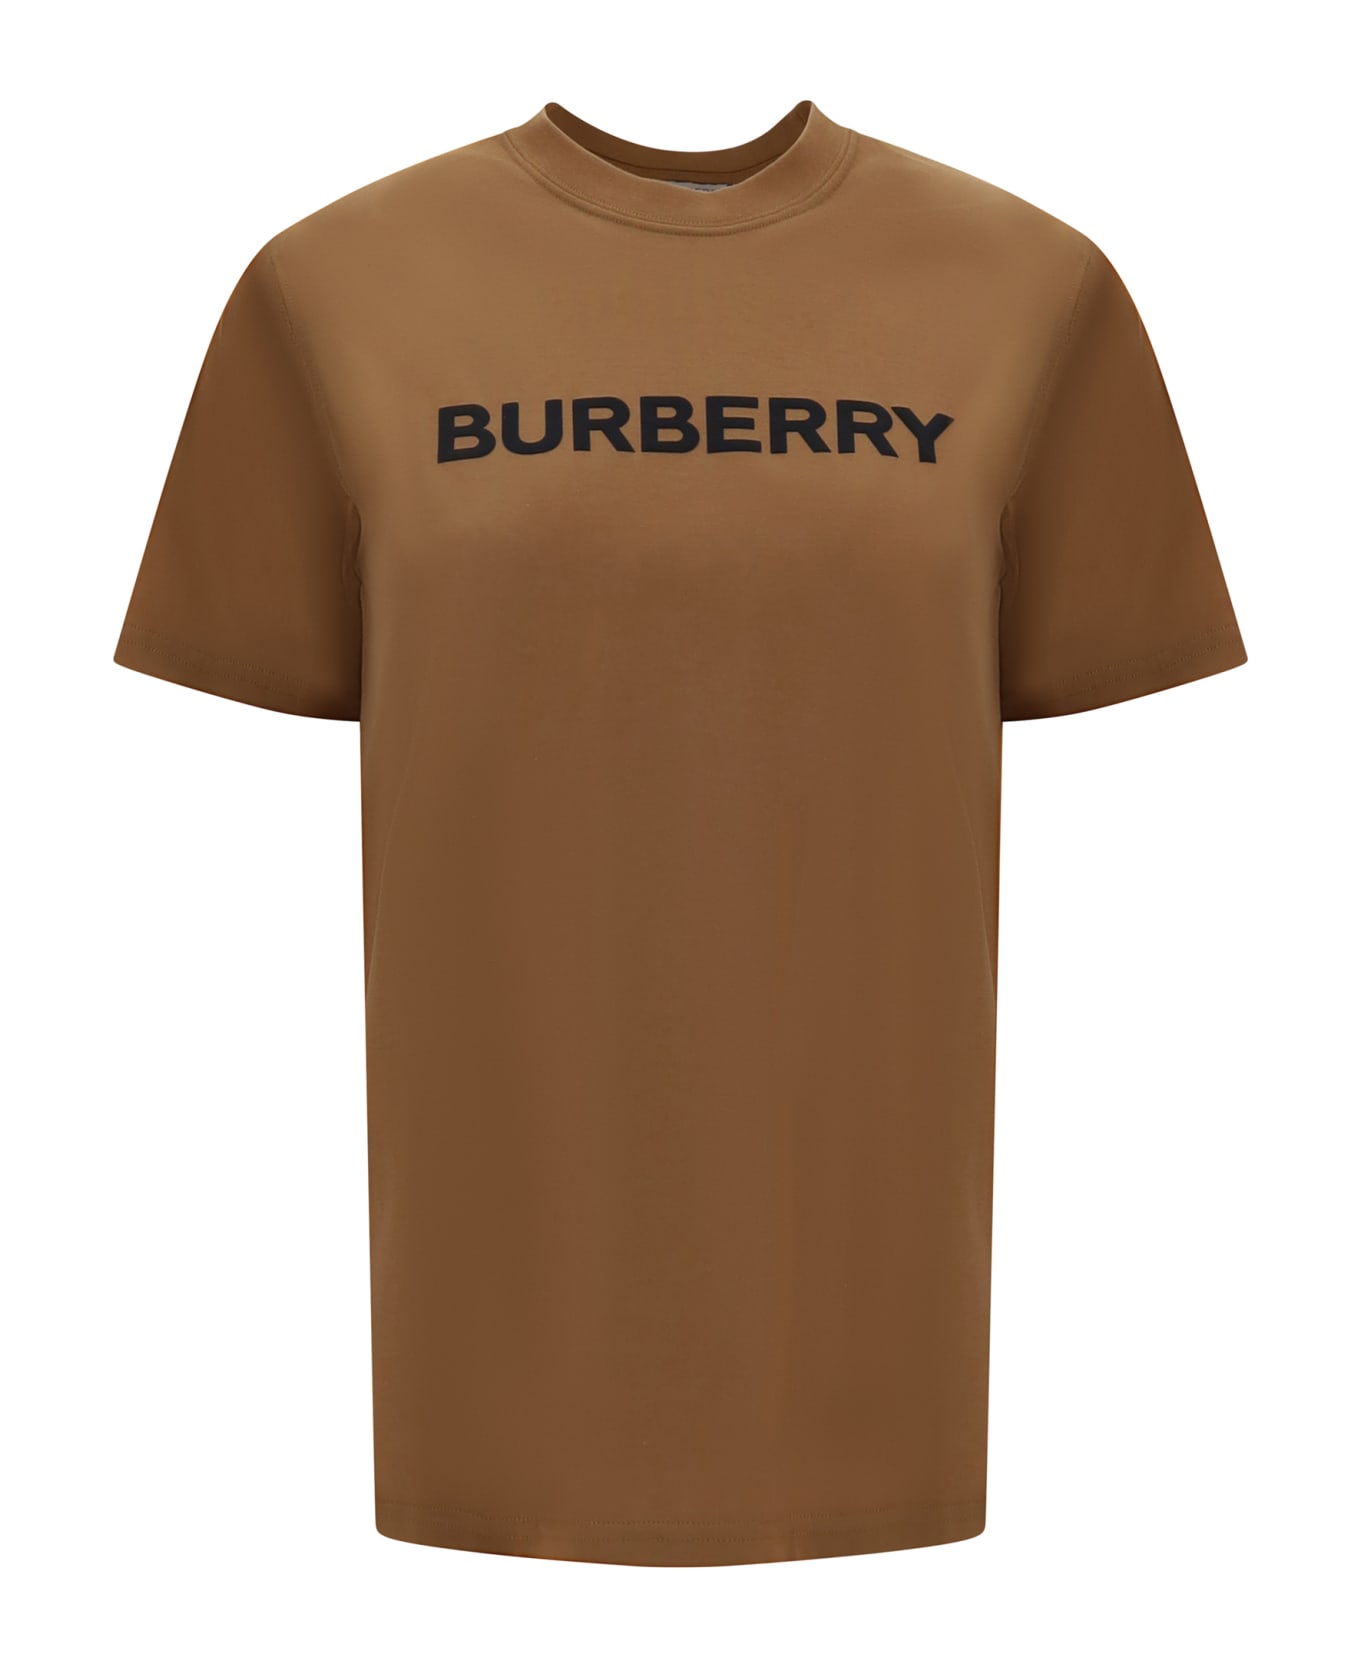 Burberry Margot T-shirt - BROWN